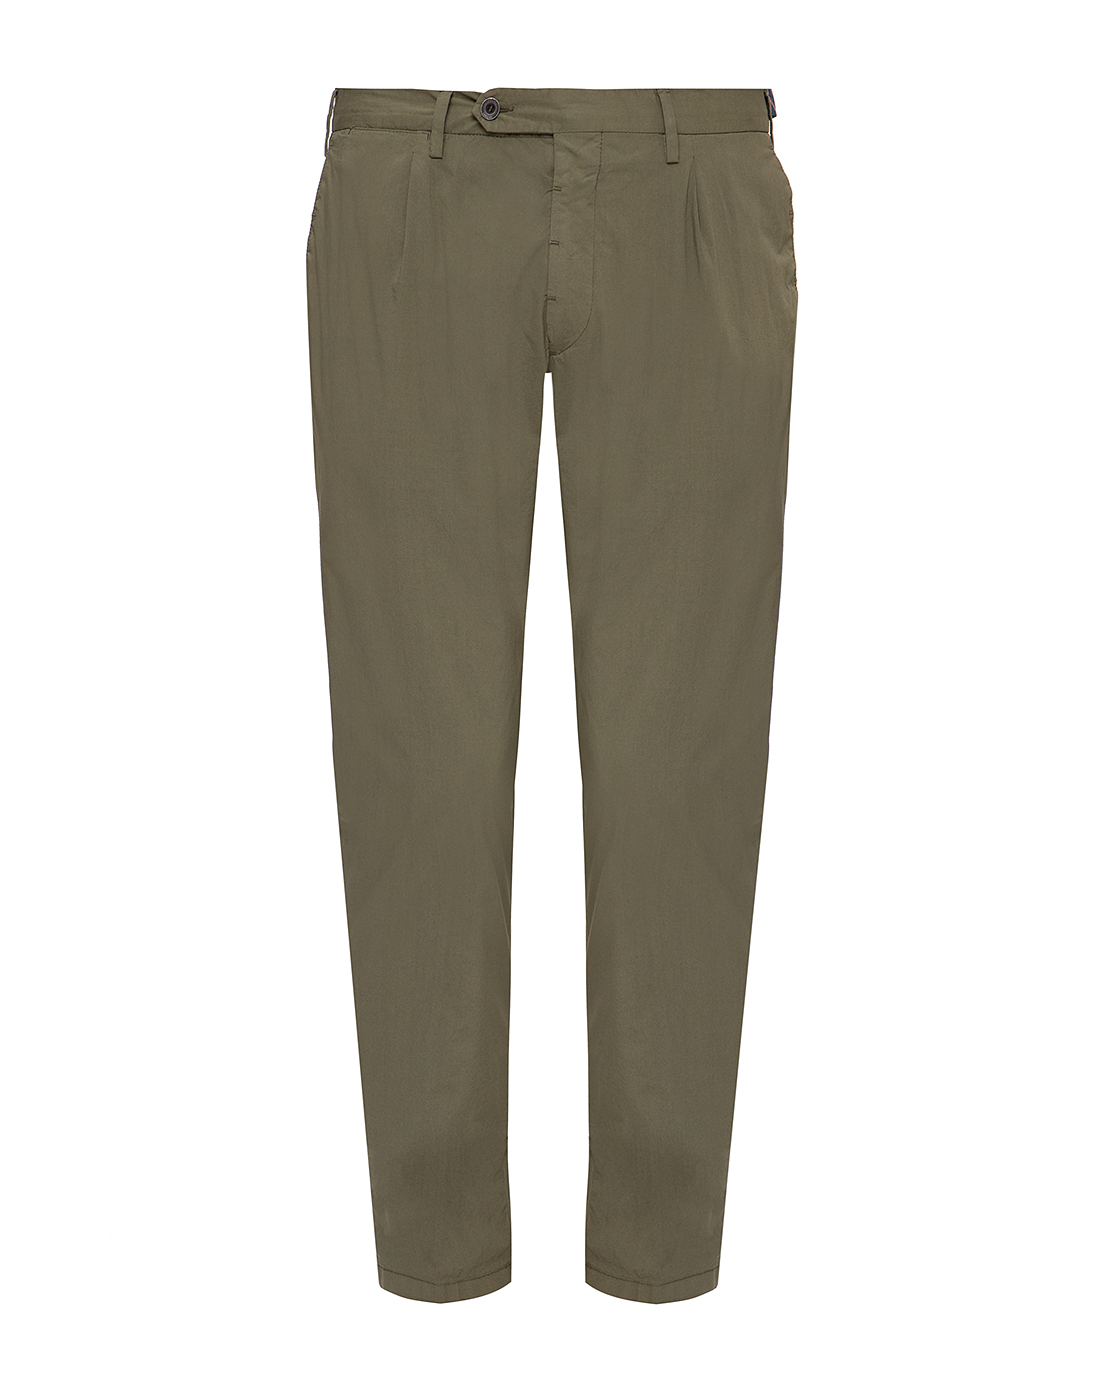 Мужские зеленые брюки Lardini SEISOHO5 EI54091 550-1